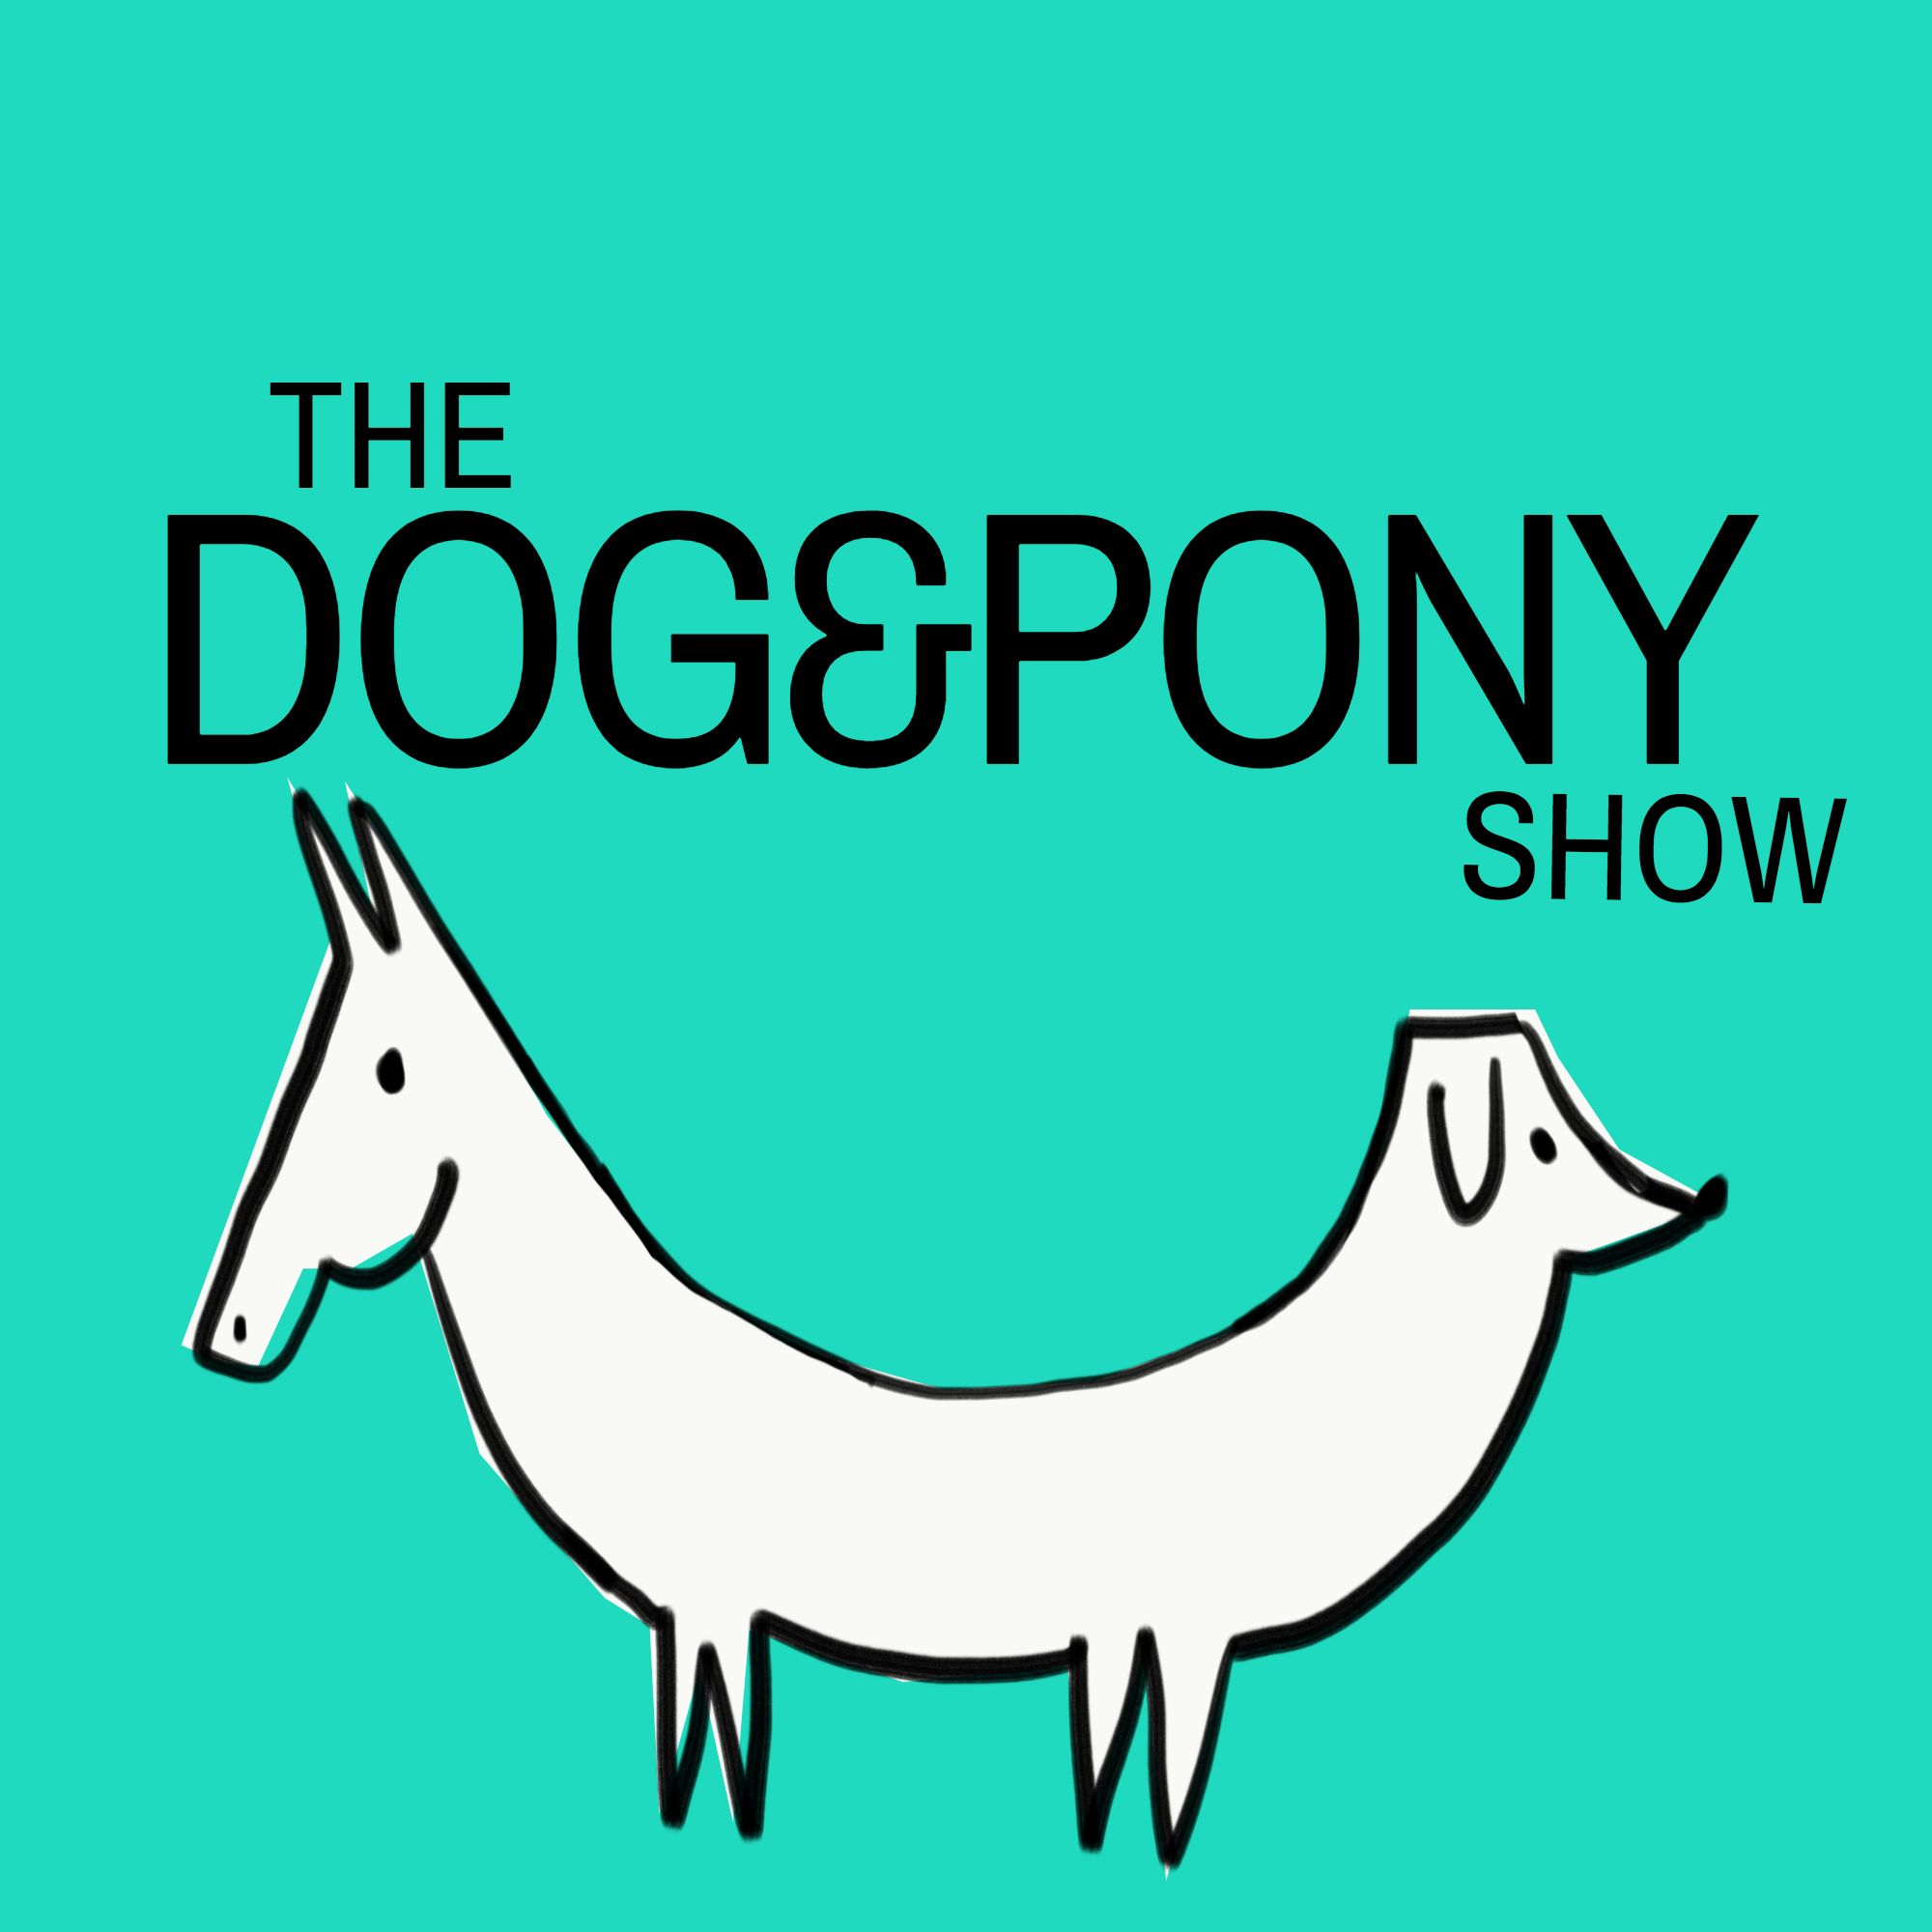 Show pony. Dog & Pony. Dog and Pony show. The Dog and Pony show Pony. The Dog and Pony show 2020.